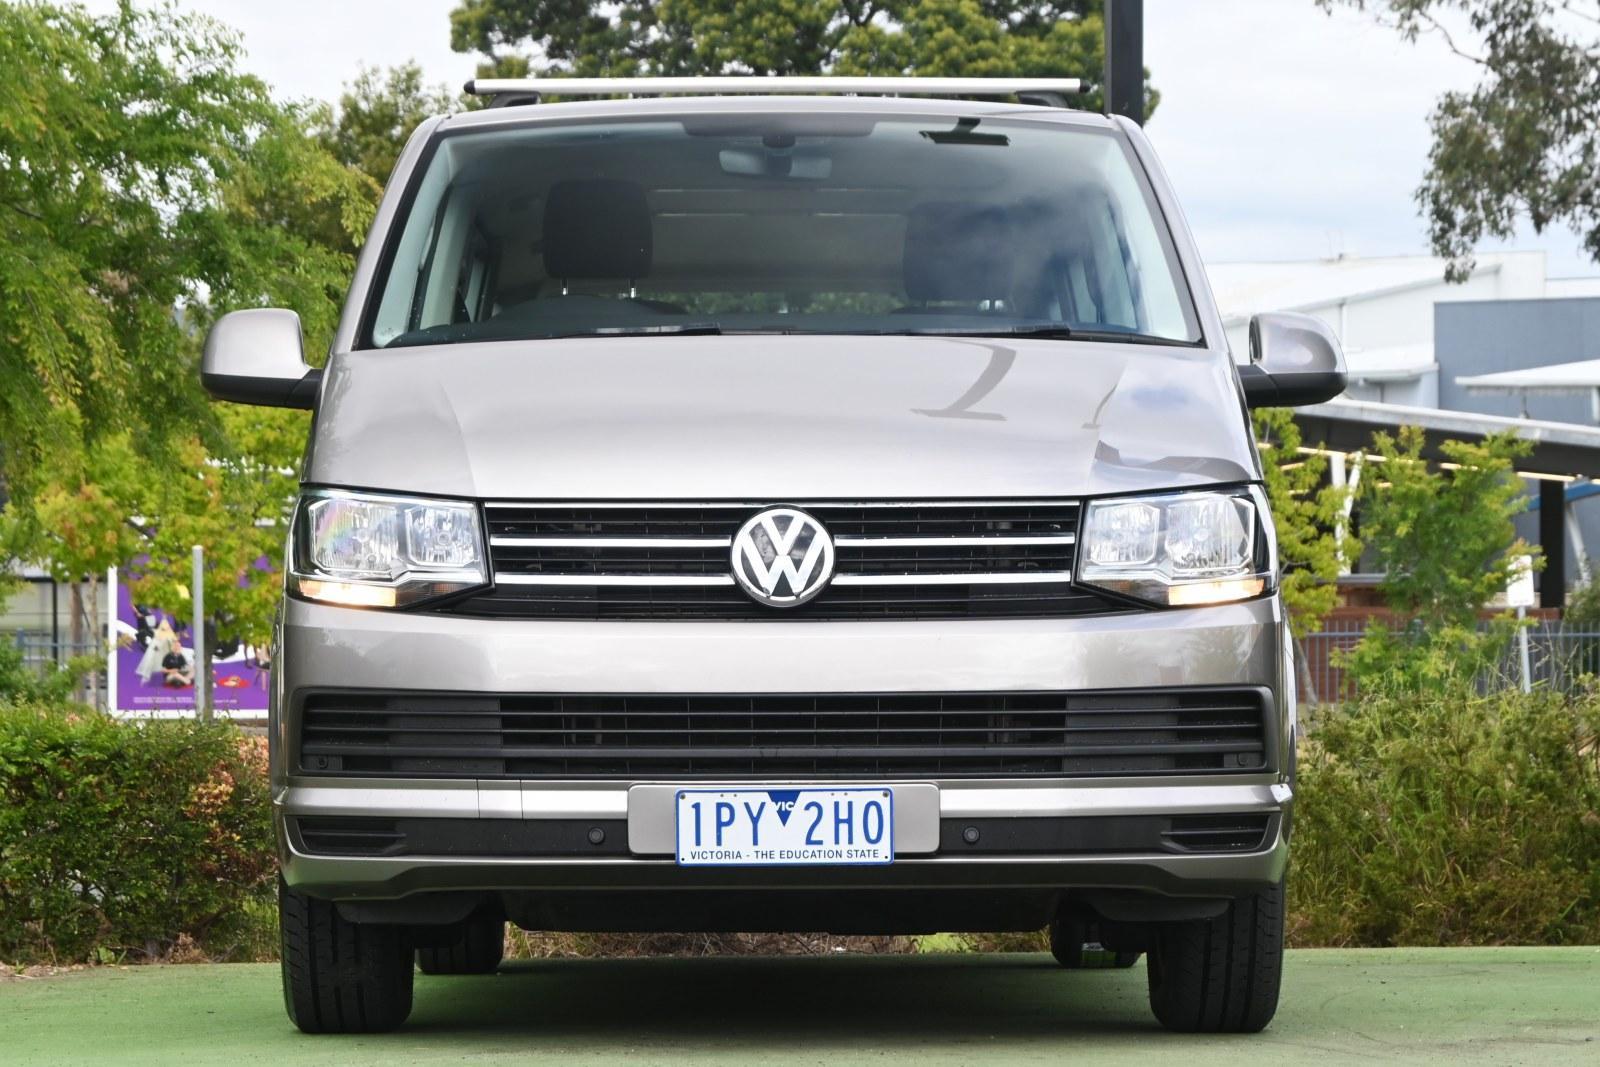 Volkswagen Multivan image 2